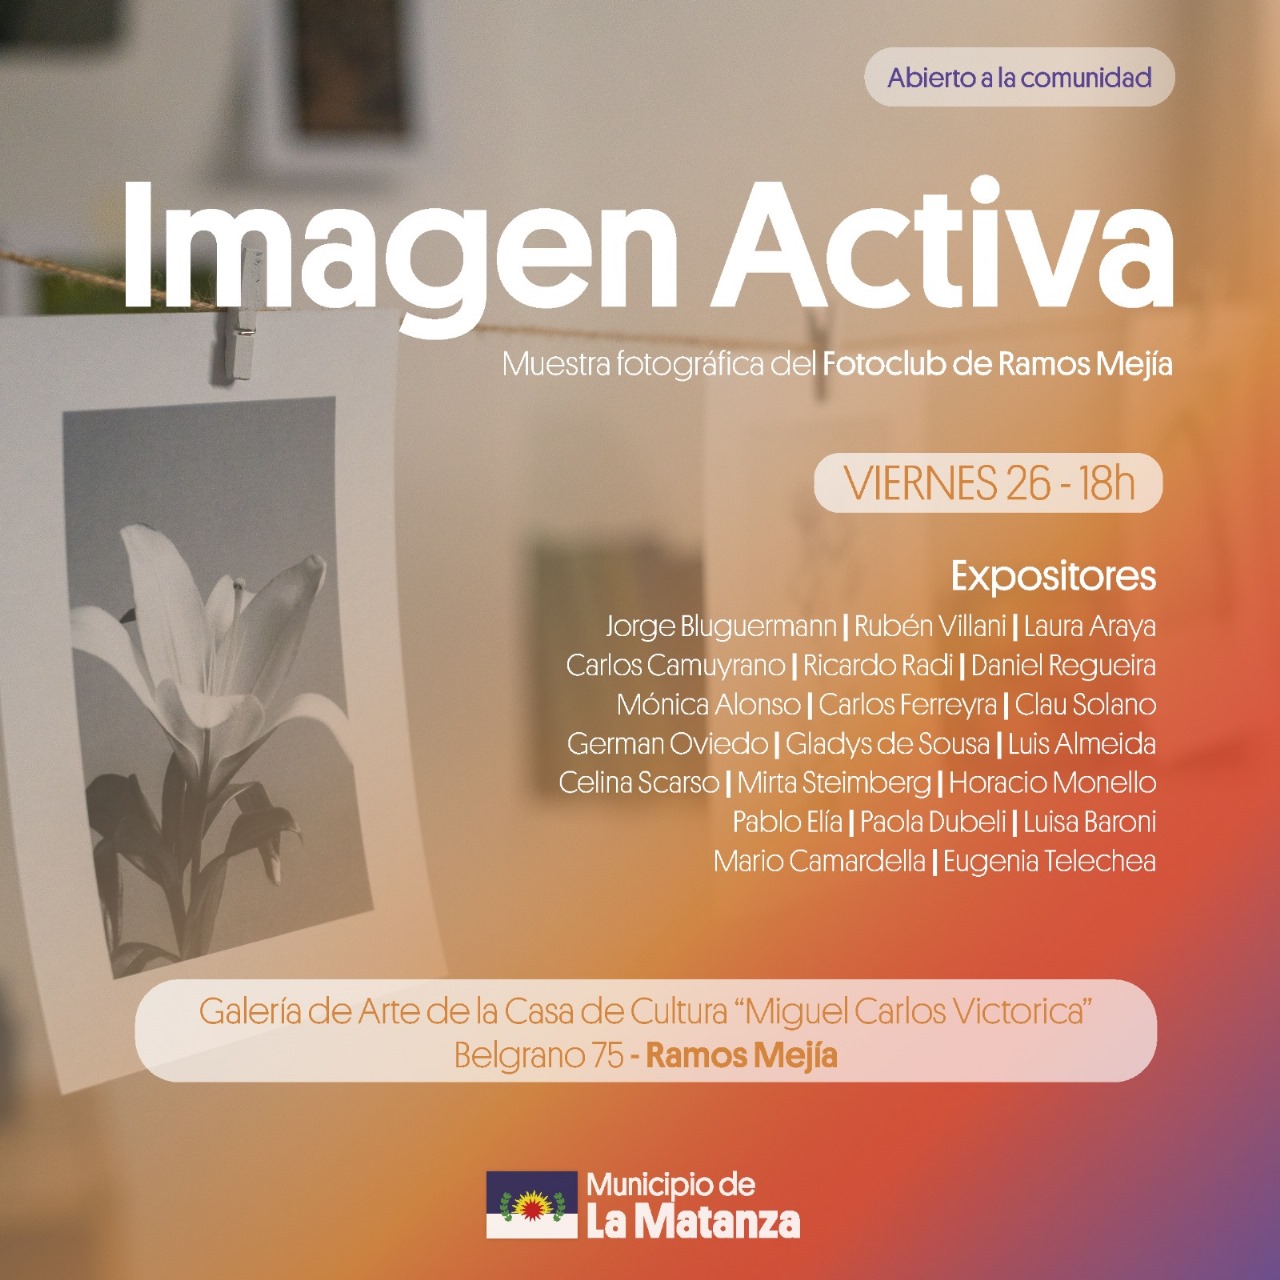 El ciclo Imagen Activa presenta una muestra de fotografía